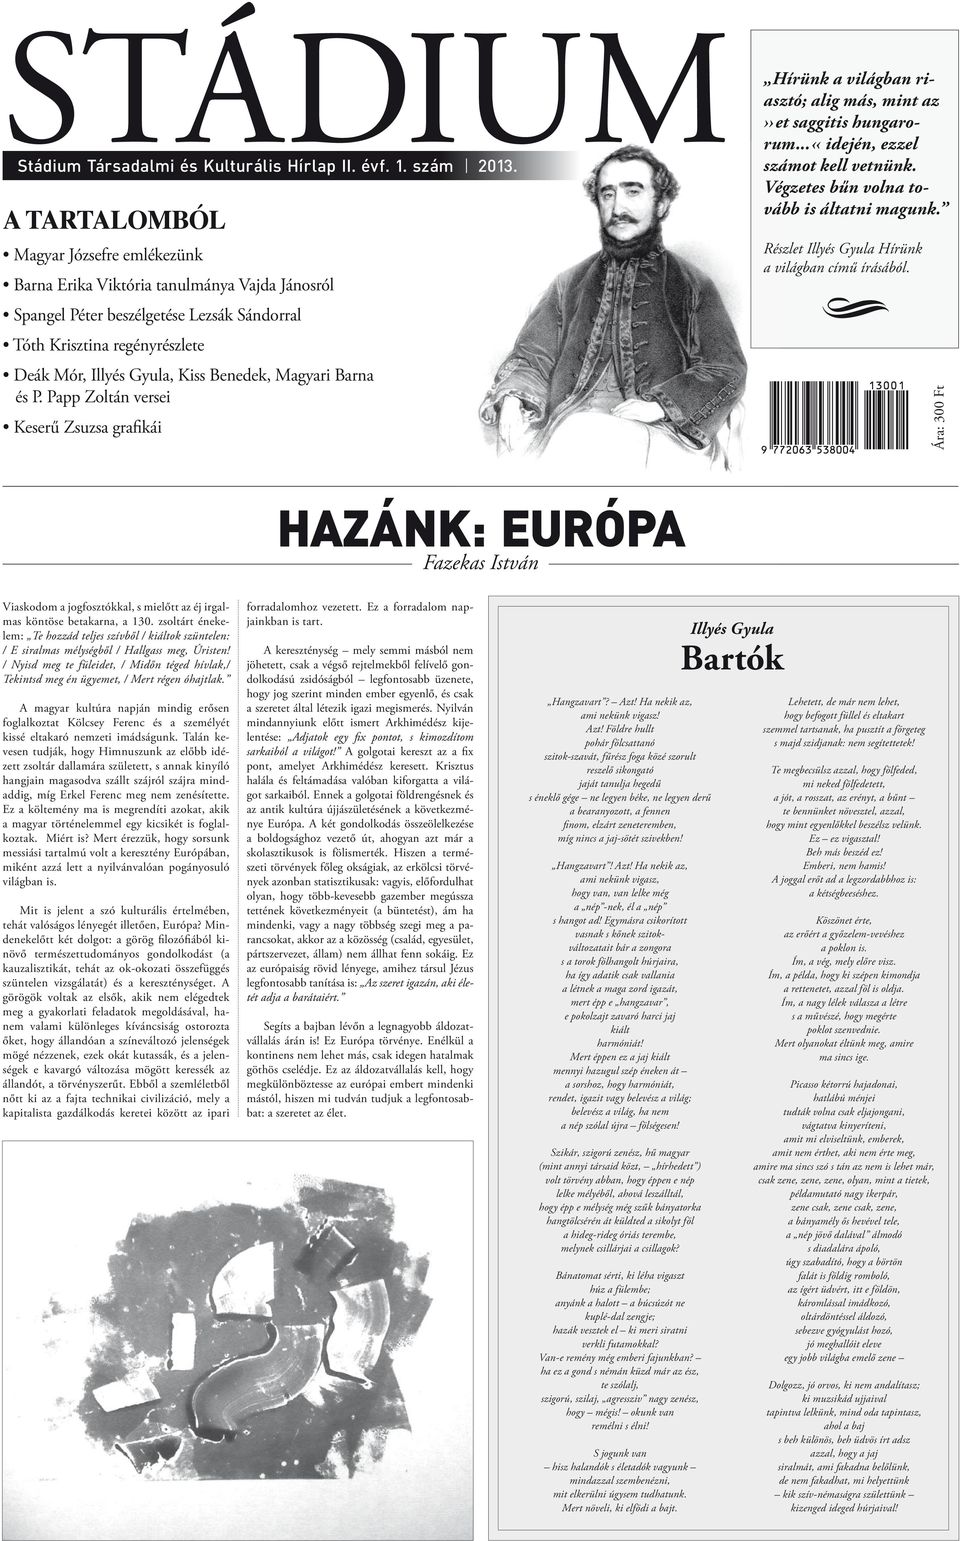 STÁDIUM. Hazánk: Európa. Fazekas István - PDF Ingyenes letöltés